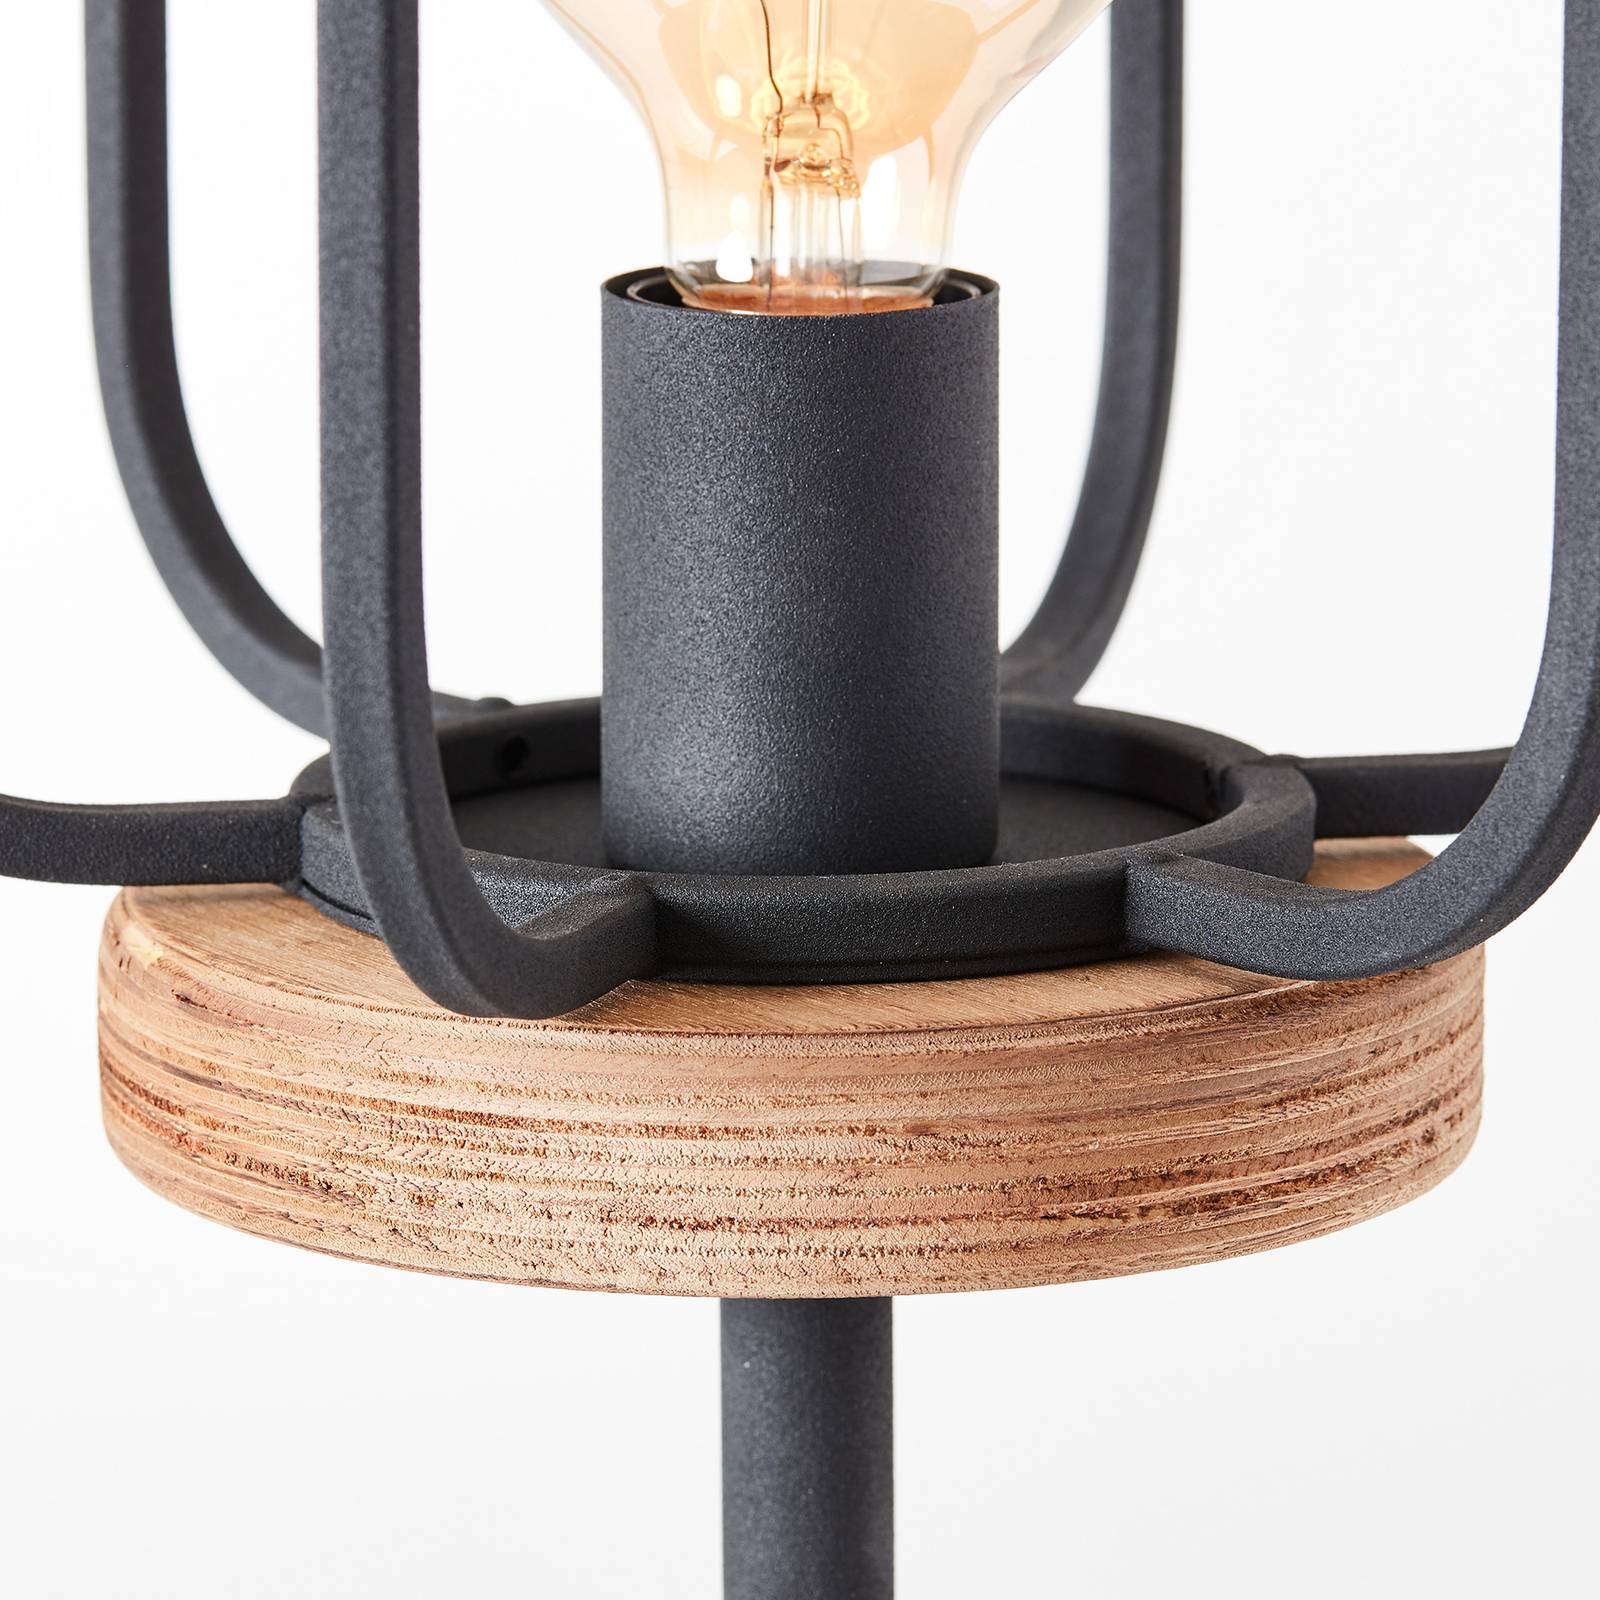 Lampa stojąca Tosh z drewnianym detalem